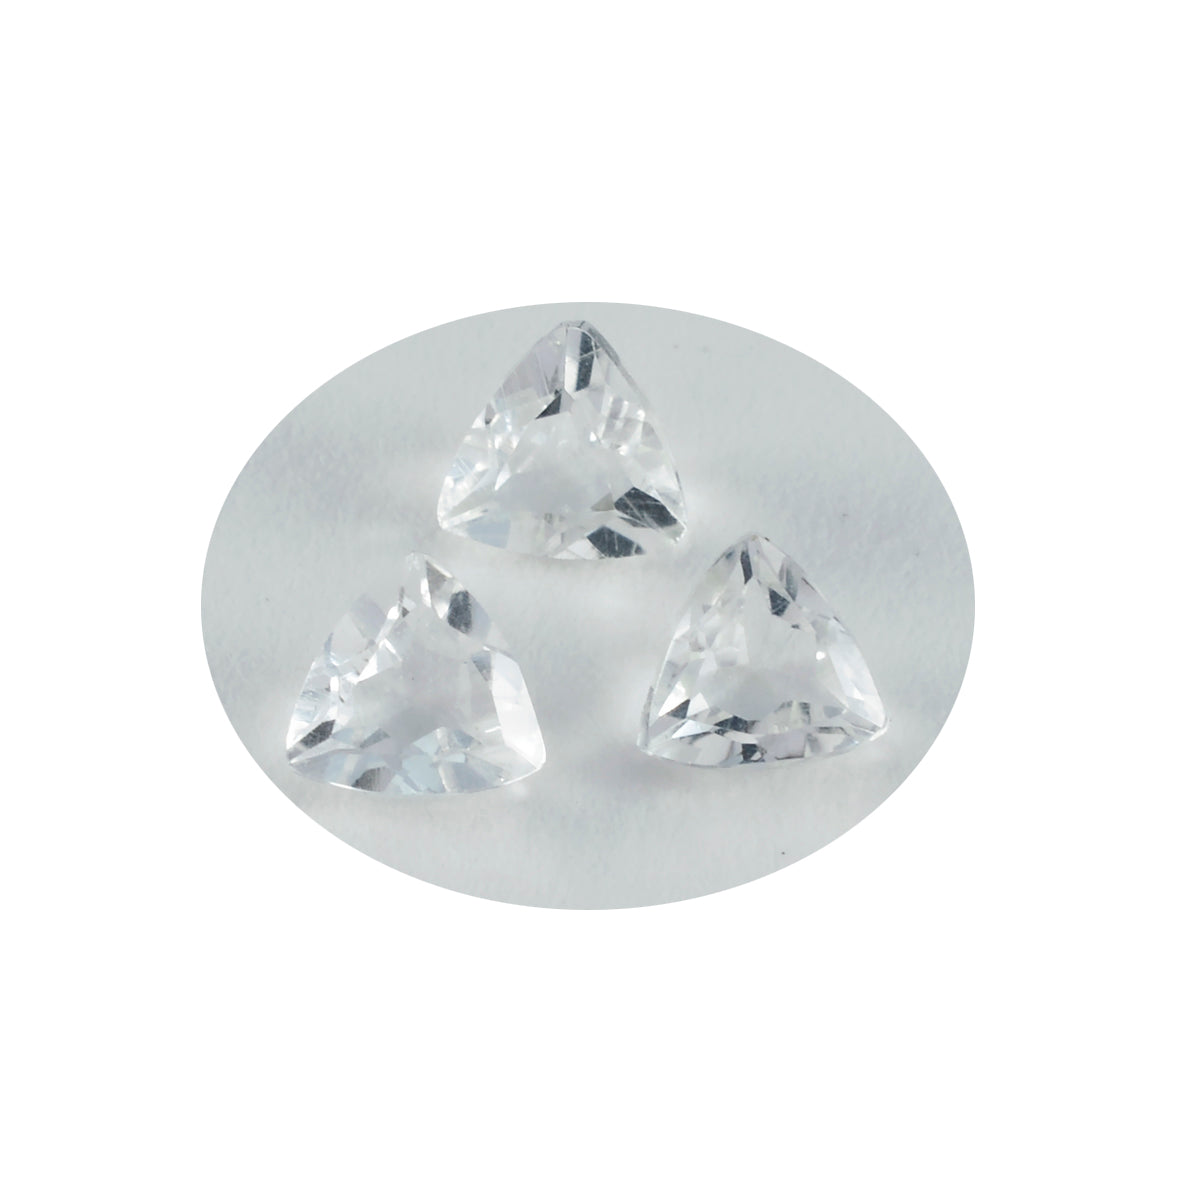 Riyogems 1pc quartz cristal blanc à facettes 10x10mm forme trillion qualité incroyable pierre en vrac